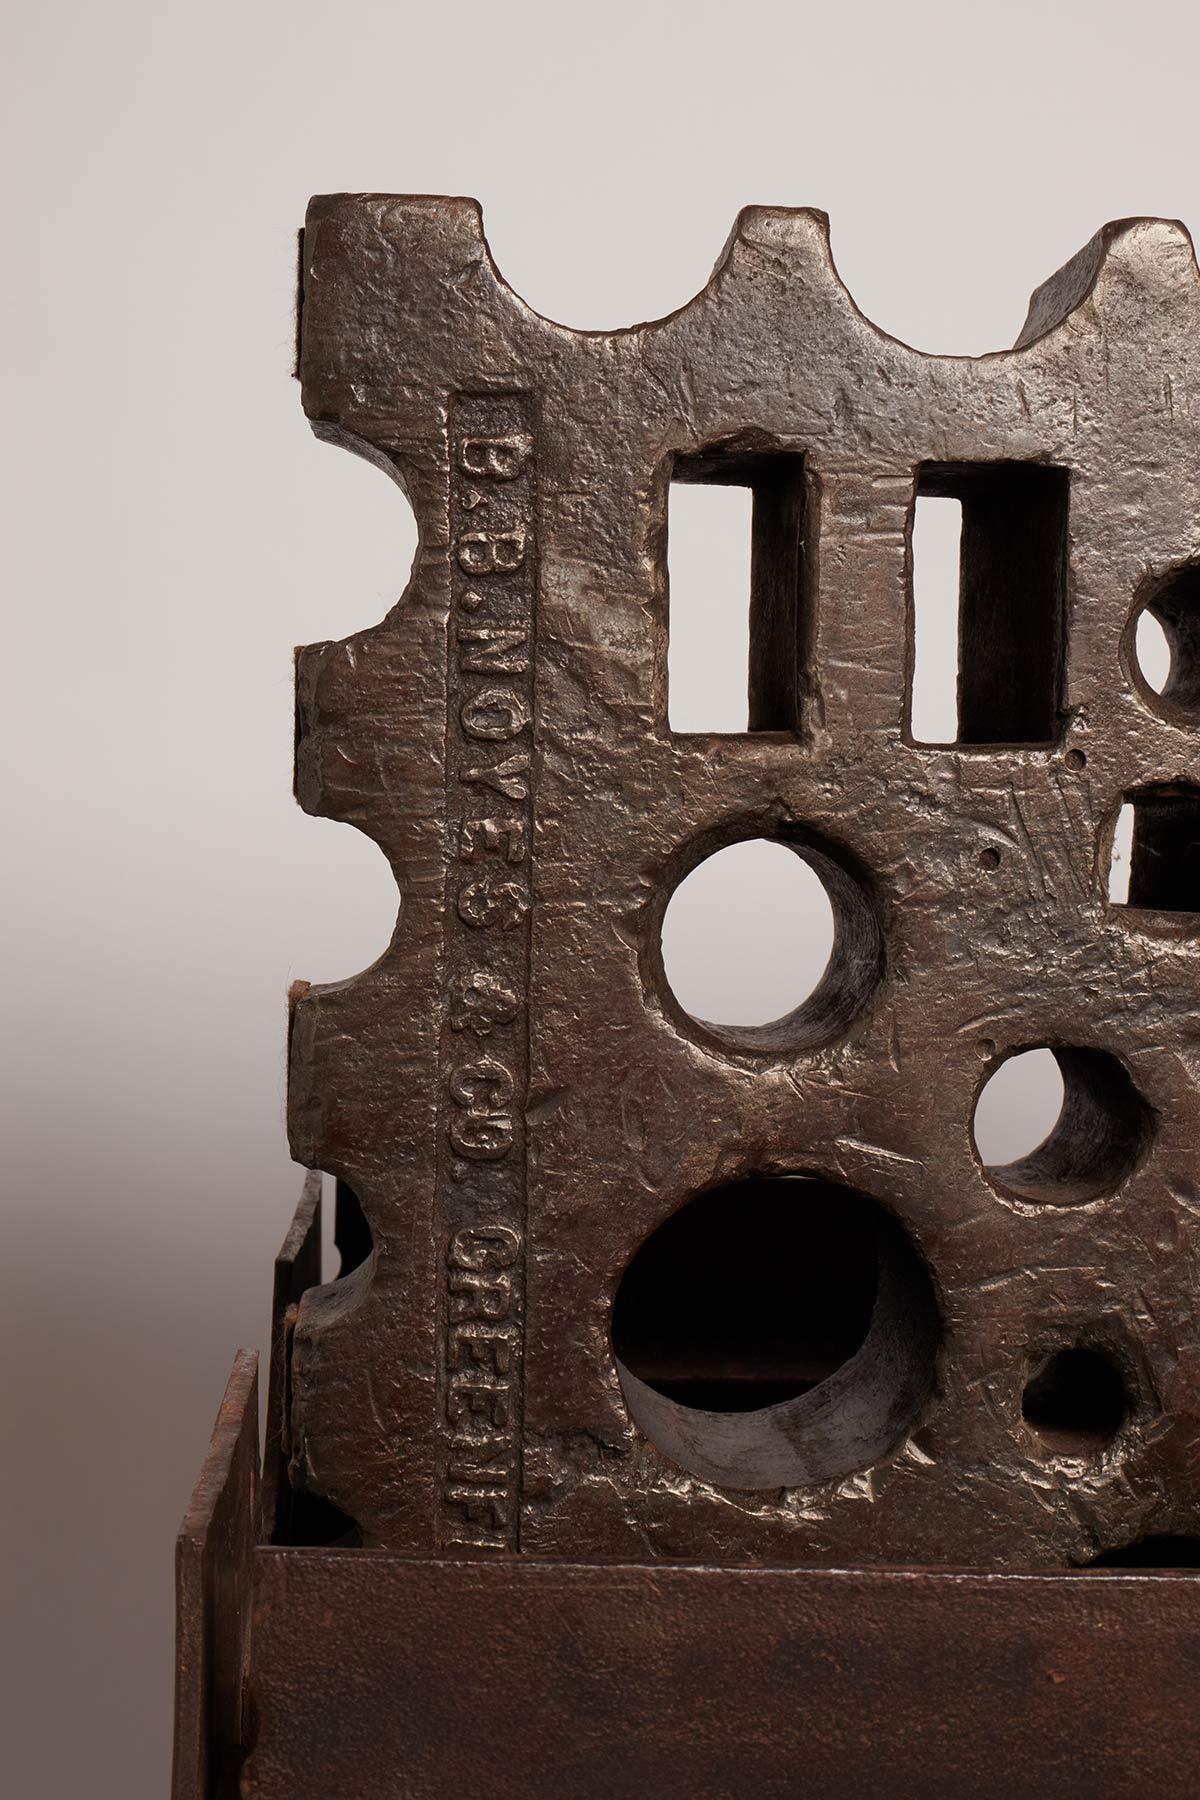 Ein Schmiedetisch Das Regal, quadratische Form, in einem einzigen Block aus Eisen gemacht, präsentiert auf der Oberfläche und auf verschiedenen Kanten von verschiedenen Formen Silhouetten, wurde von der Schmiede verwendet, um das Eisen nach den